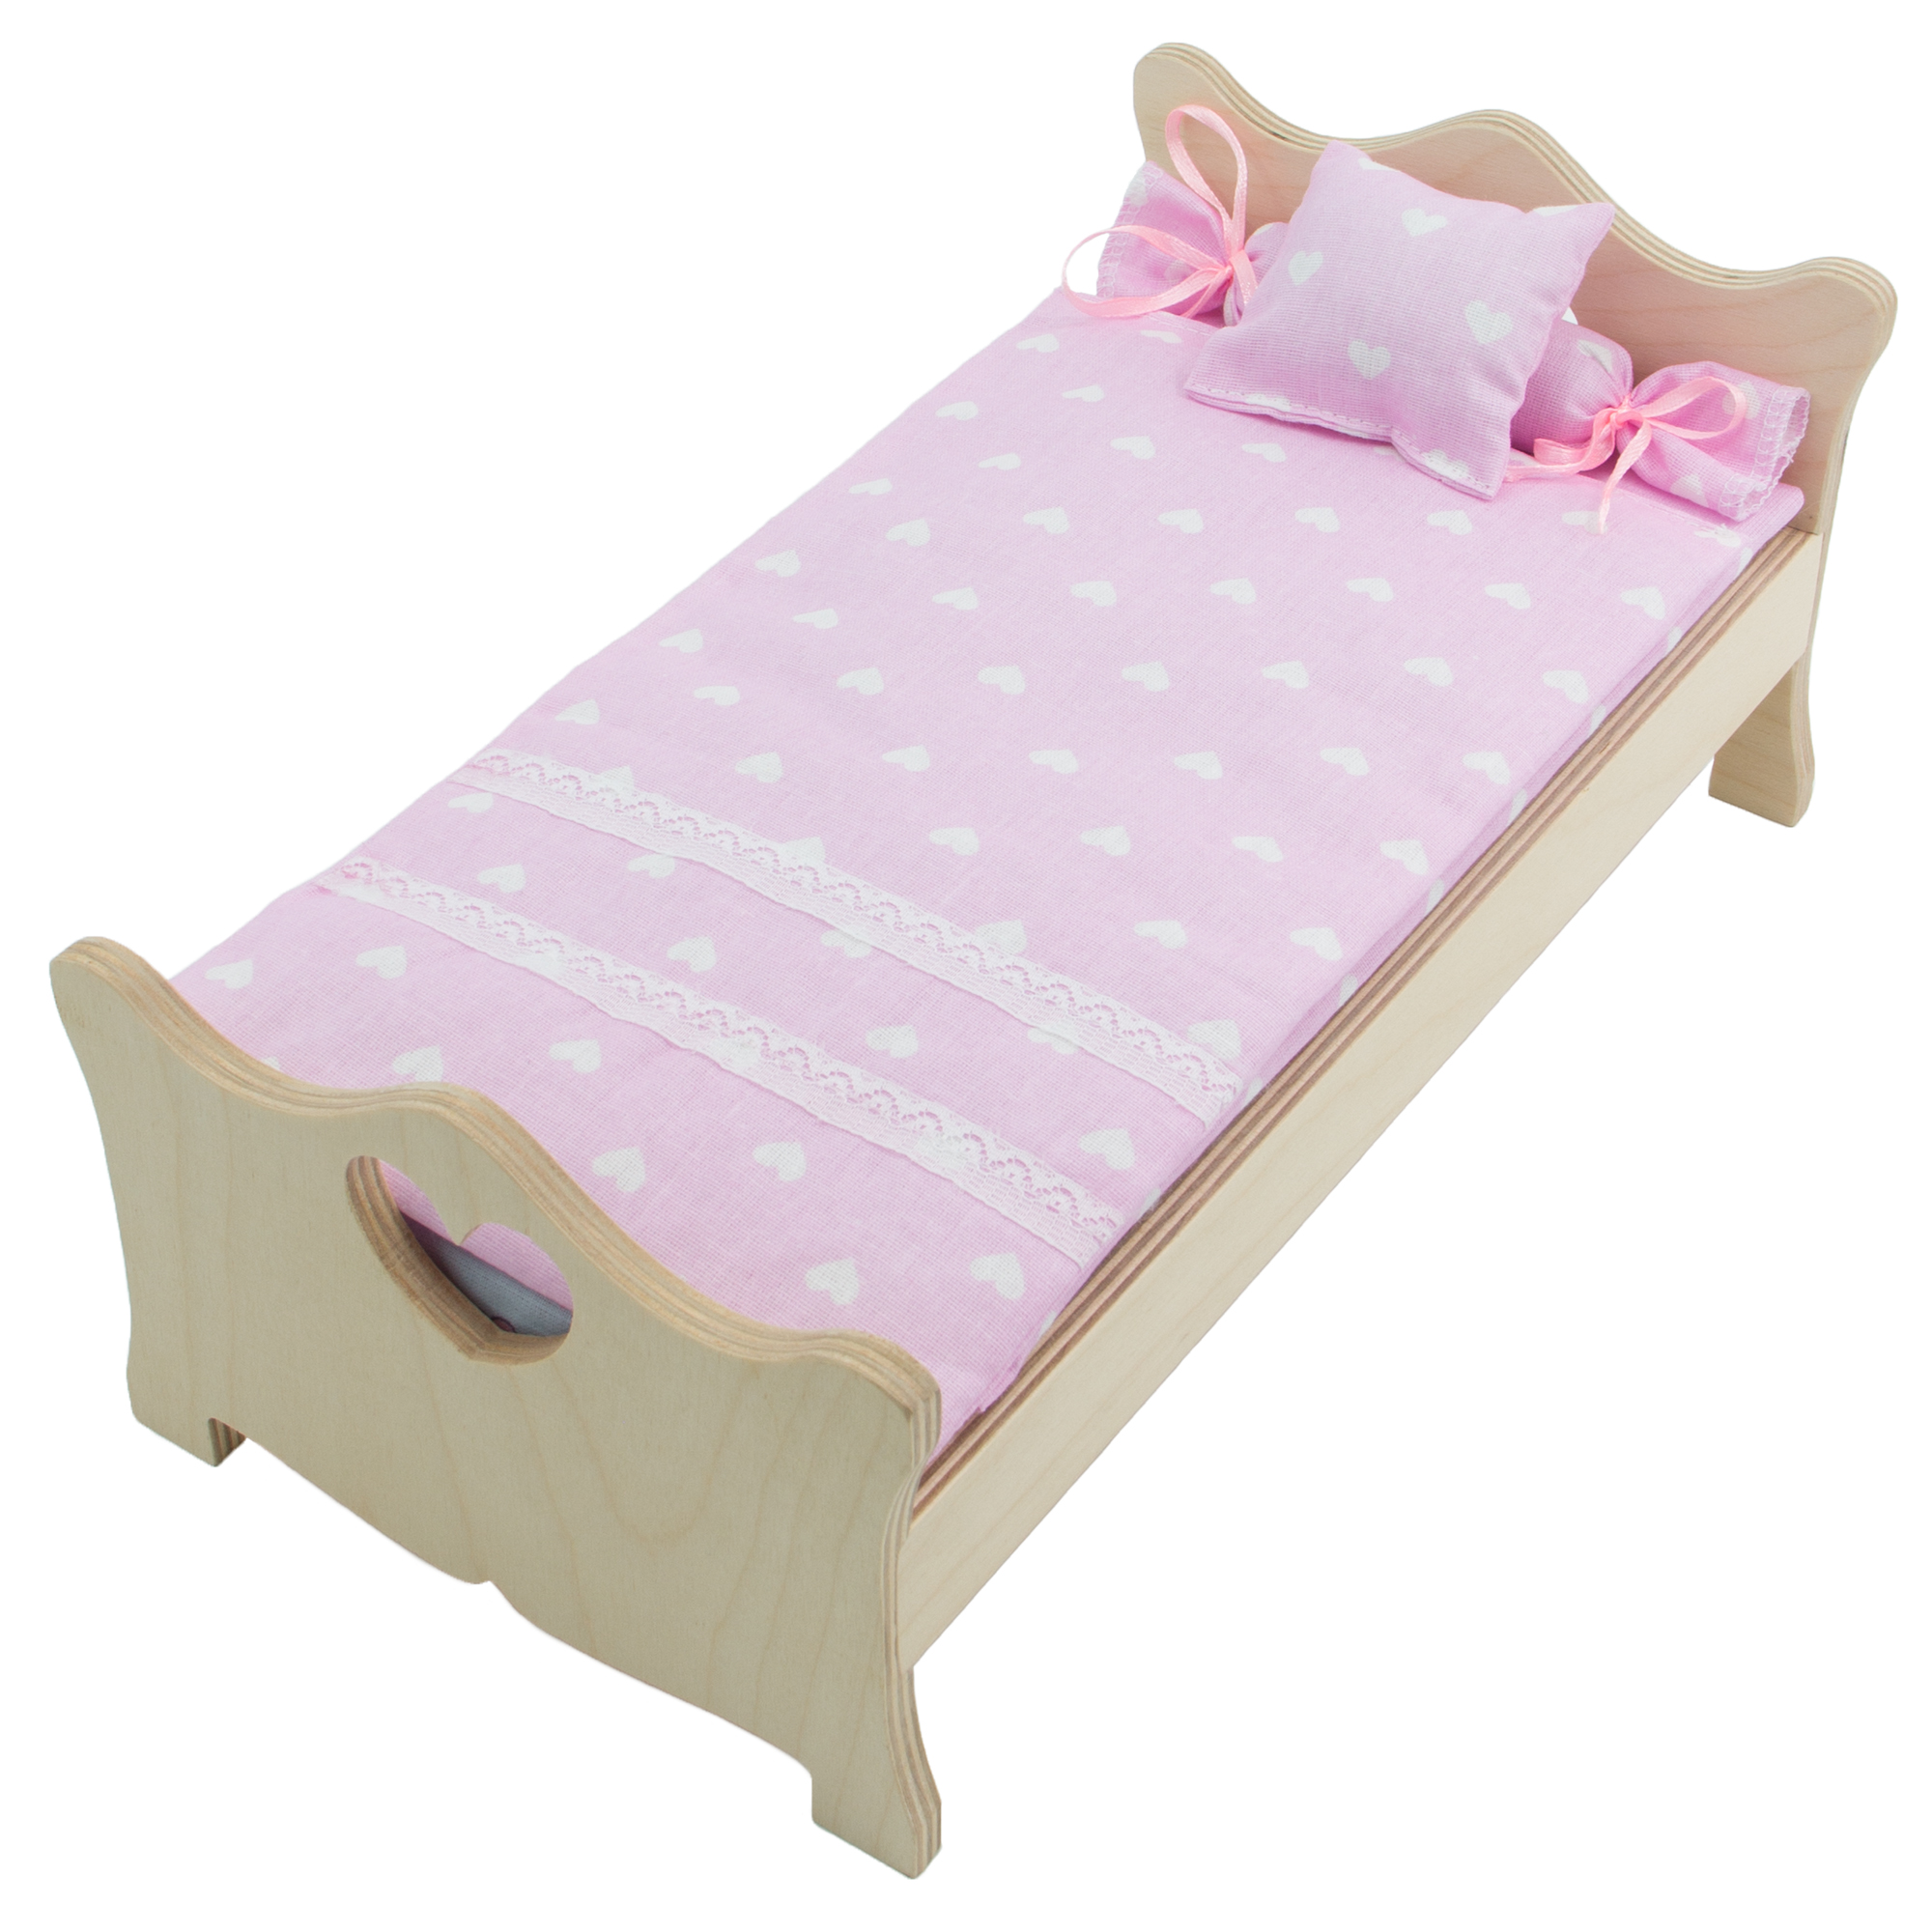 Комплект постельного белья Модница для куклы 29 см бледно-розовый 2002бледно-розовый - фото 6